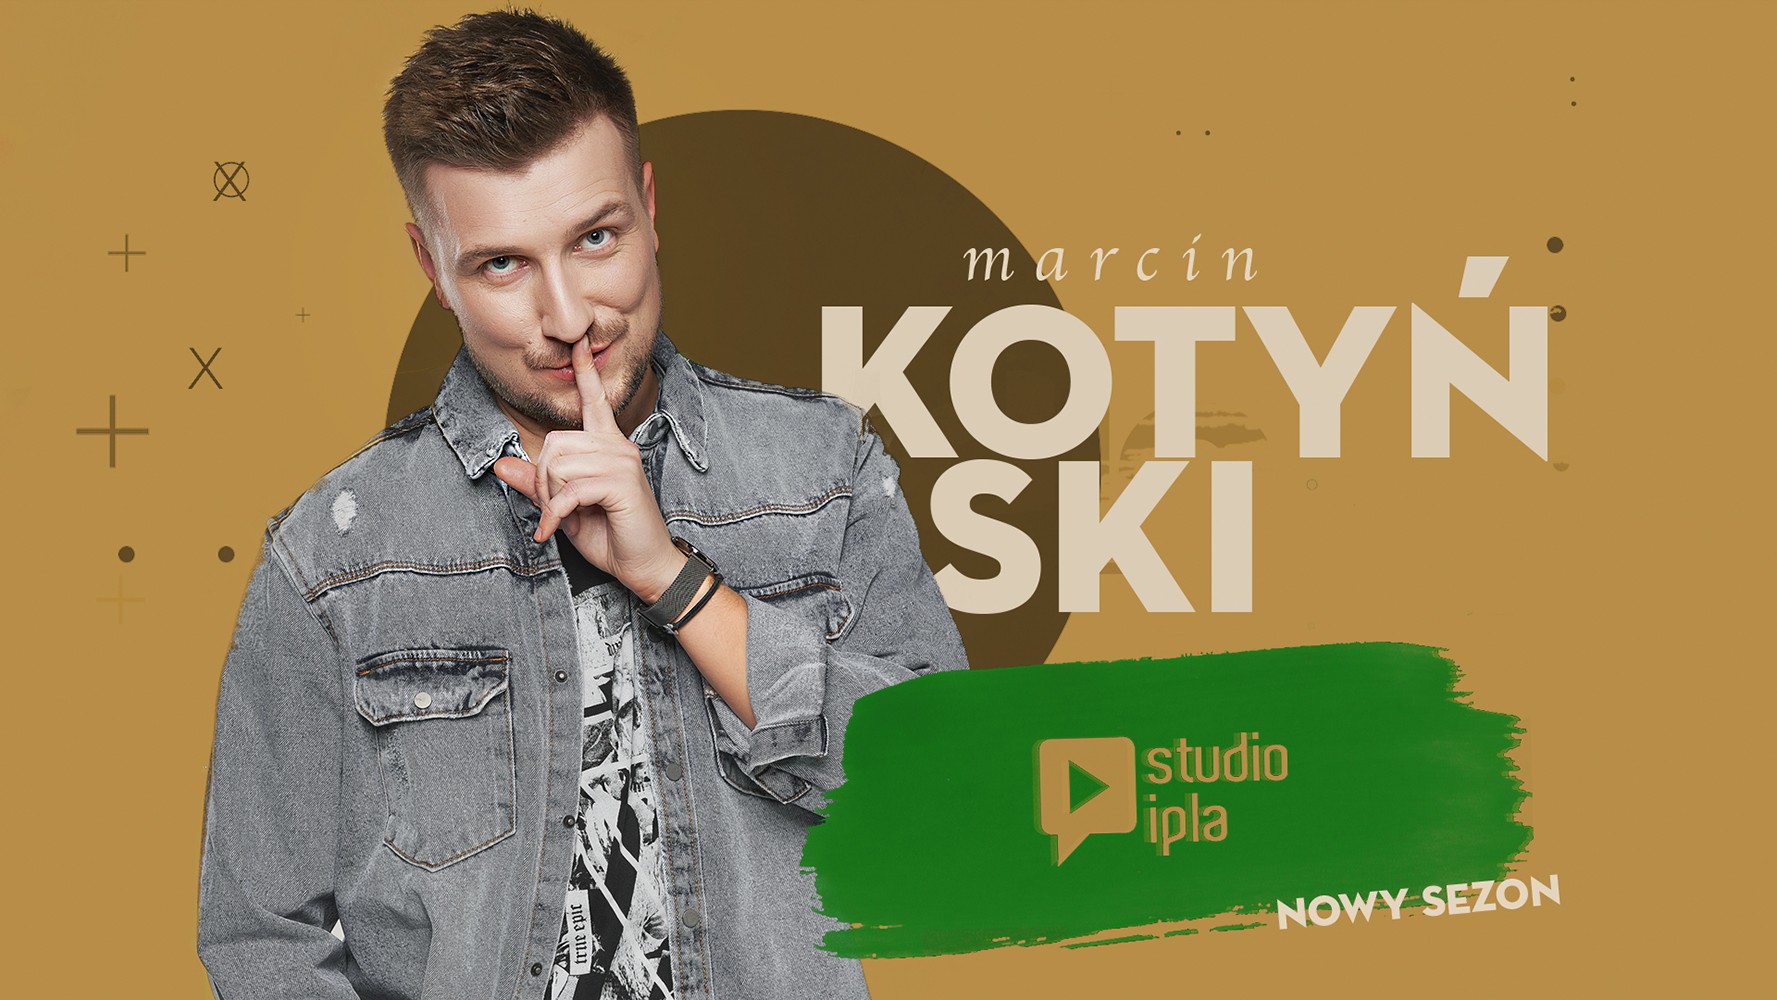 Marcin Kotyński w Studio IPLA: Z muzyką przez świat! - Polsat.pl